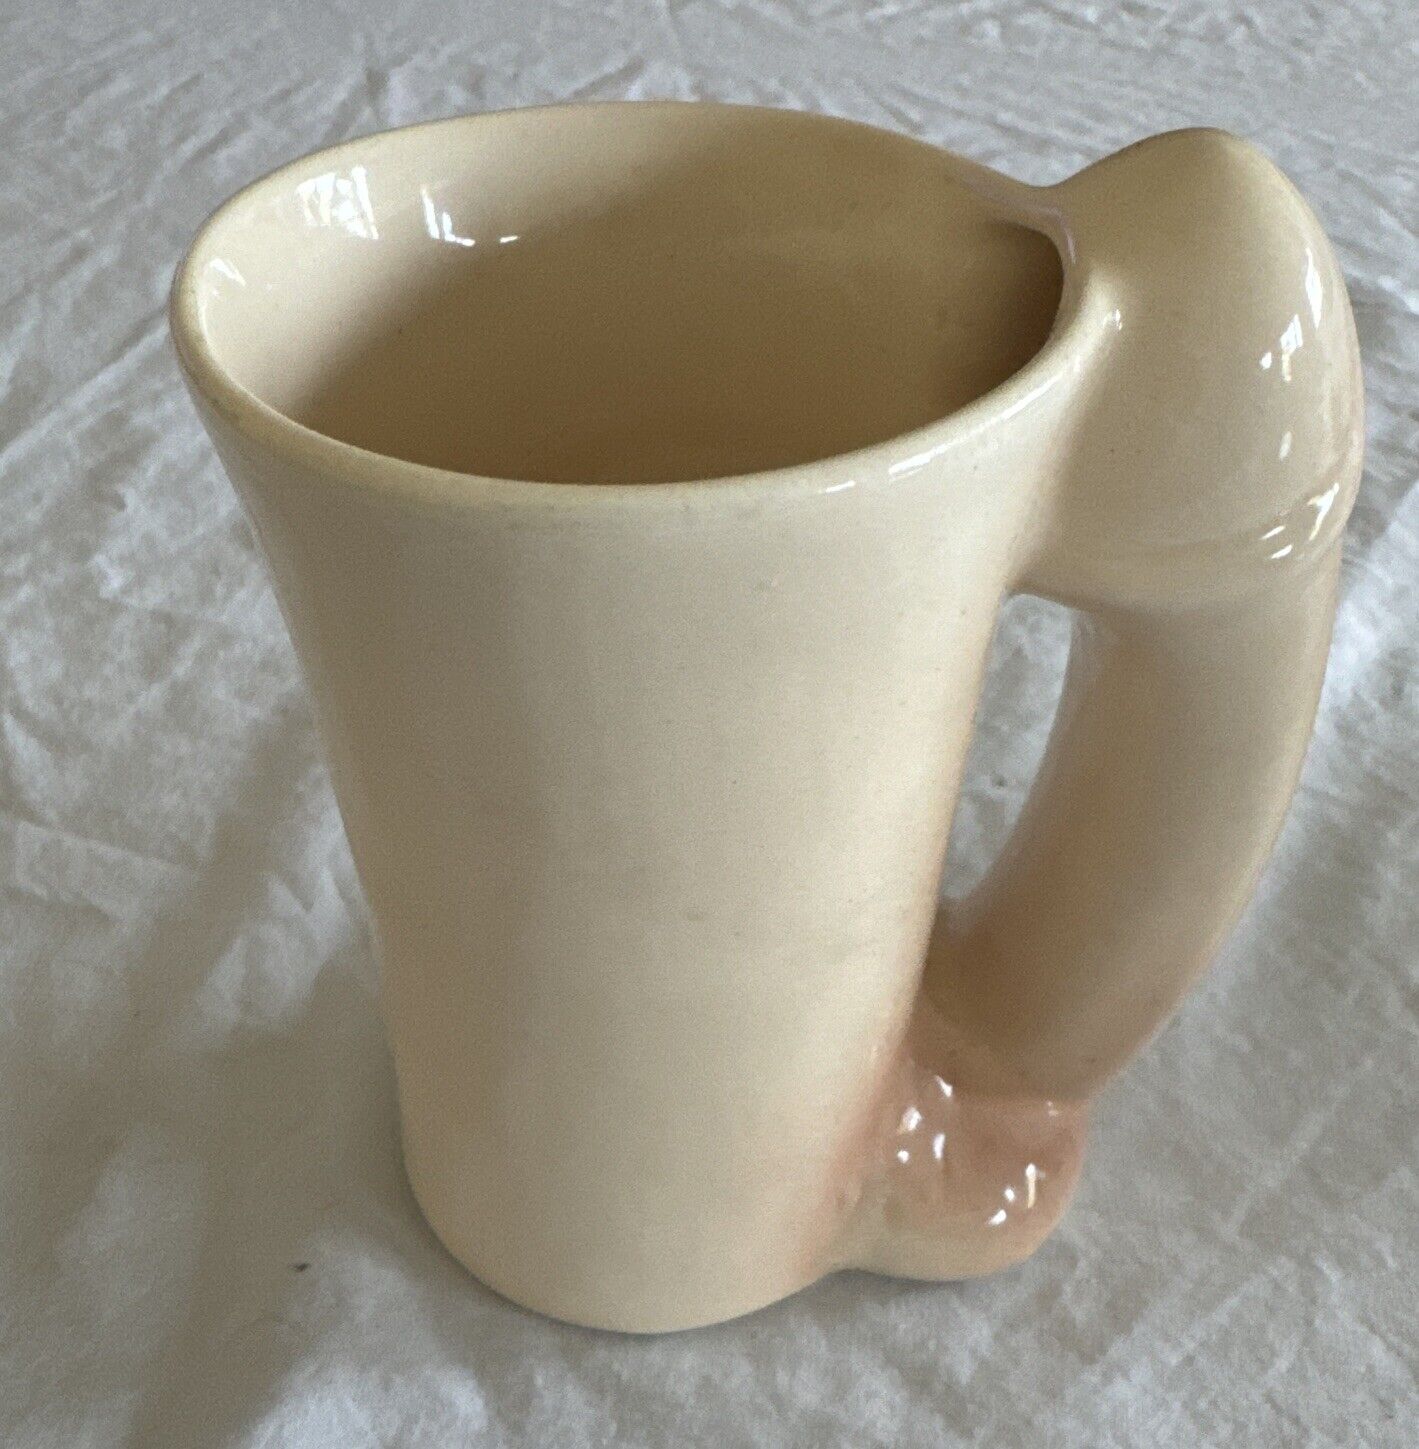 Vintage naughty mug naked man phallus Coffee Cup Adult Humor Novelty Gag Gift